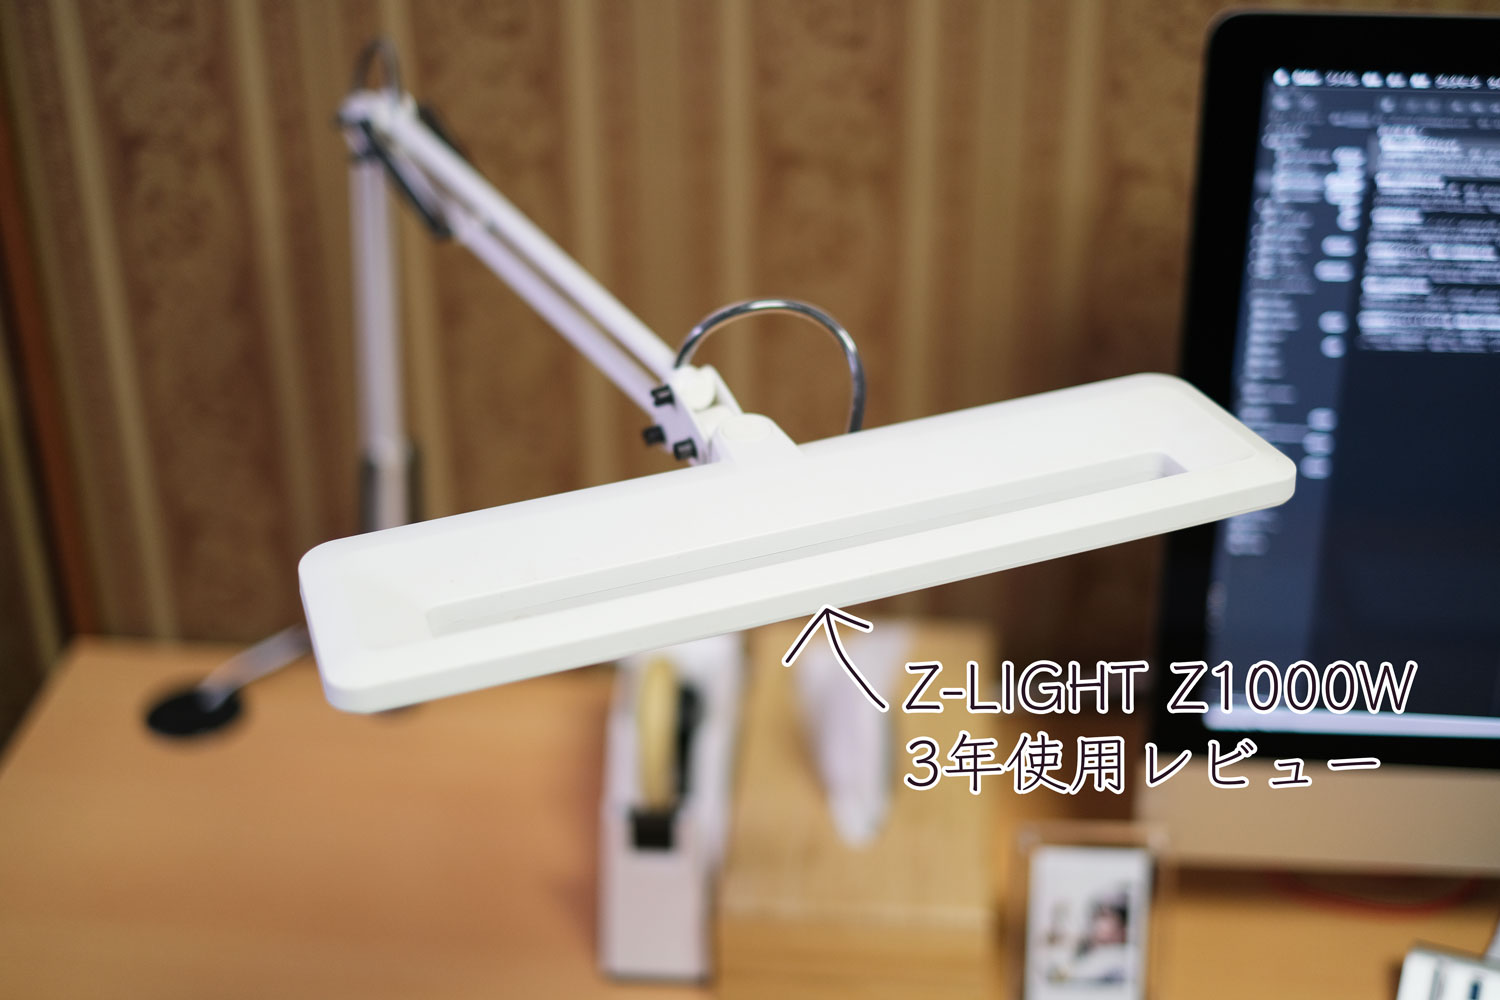 山田照明 Z-LIGHT Z1000Wの長期使用レビュー – Cola Blog (コーラブログ)